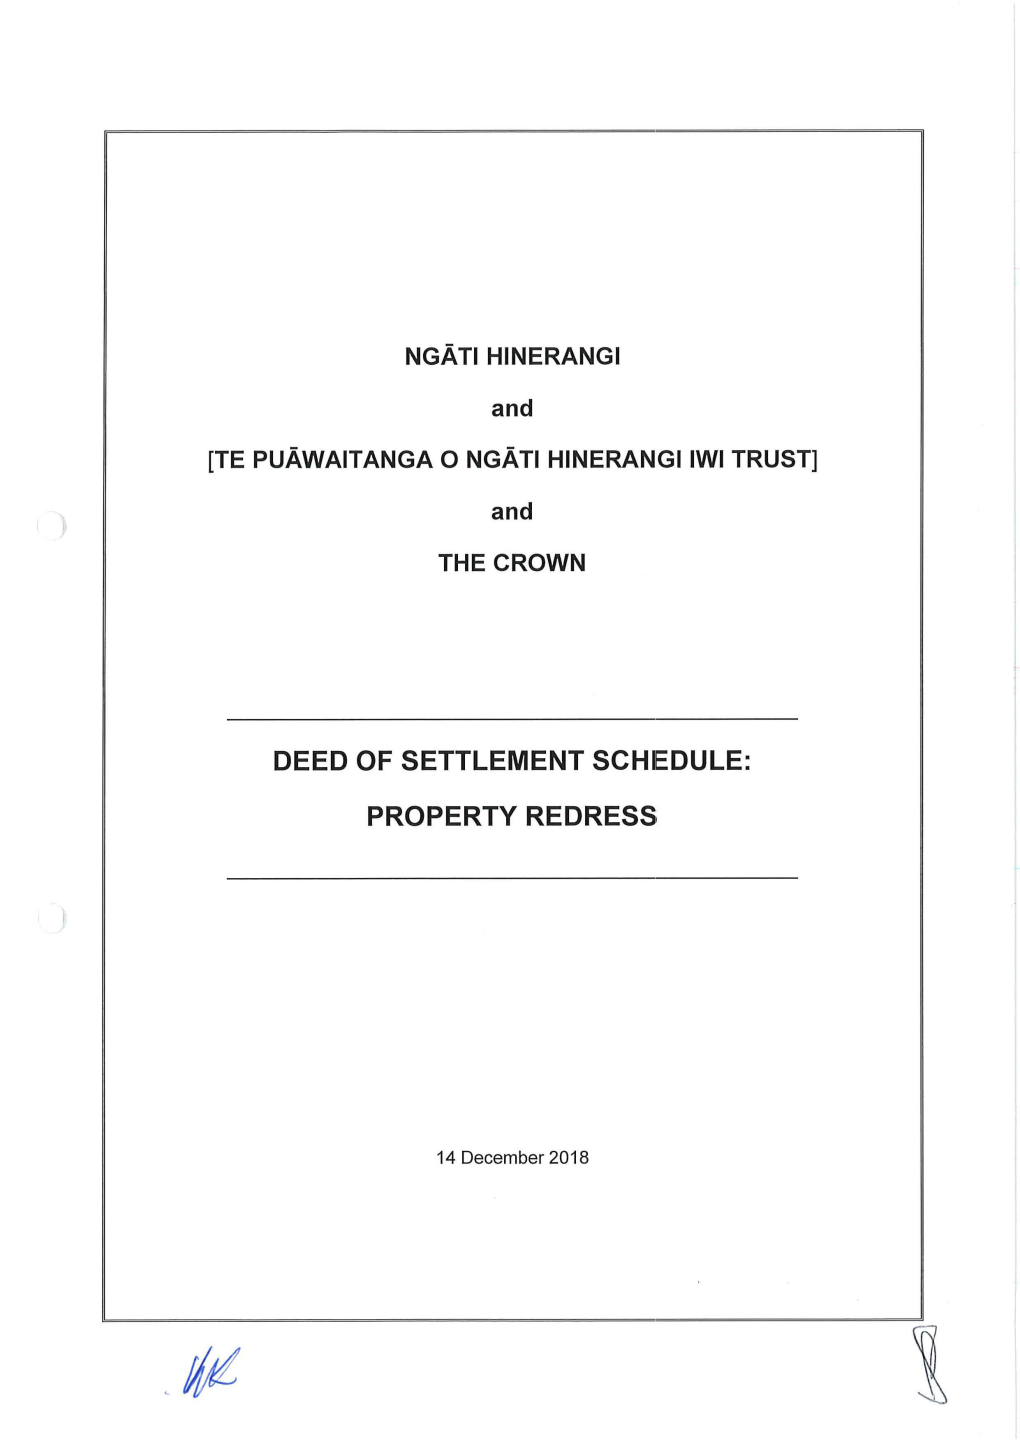 Deed of Settlement Schiedule: Property Redress